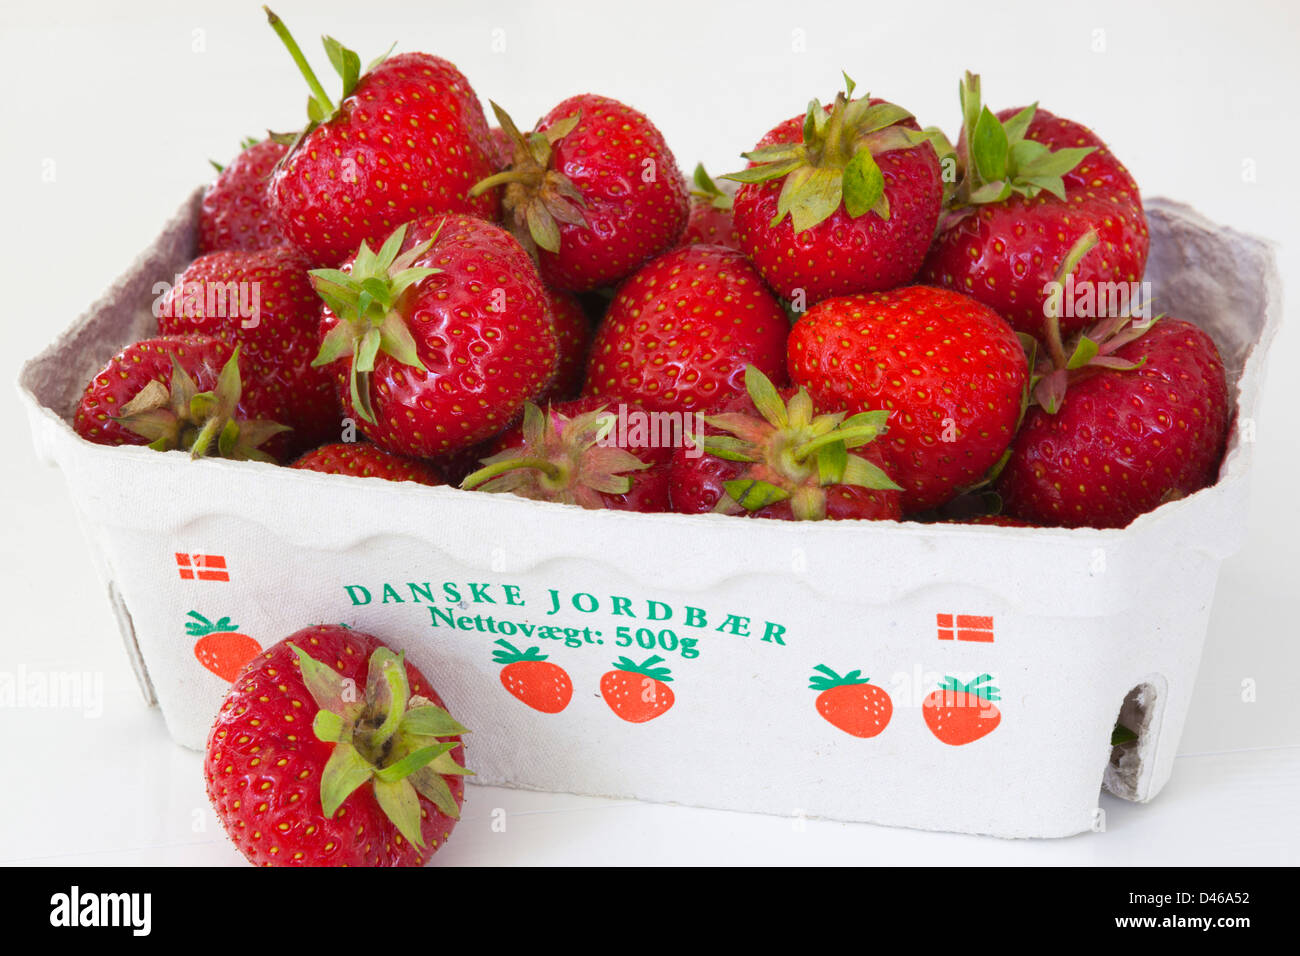 Danish strawberries (Jordbær) Stock Photo